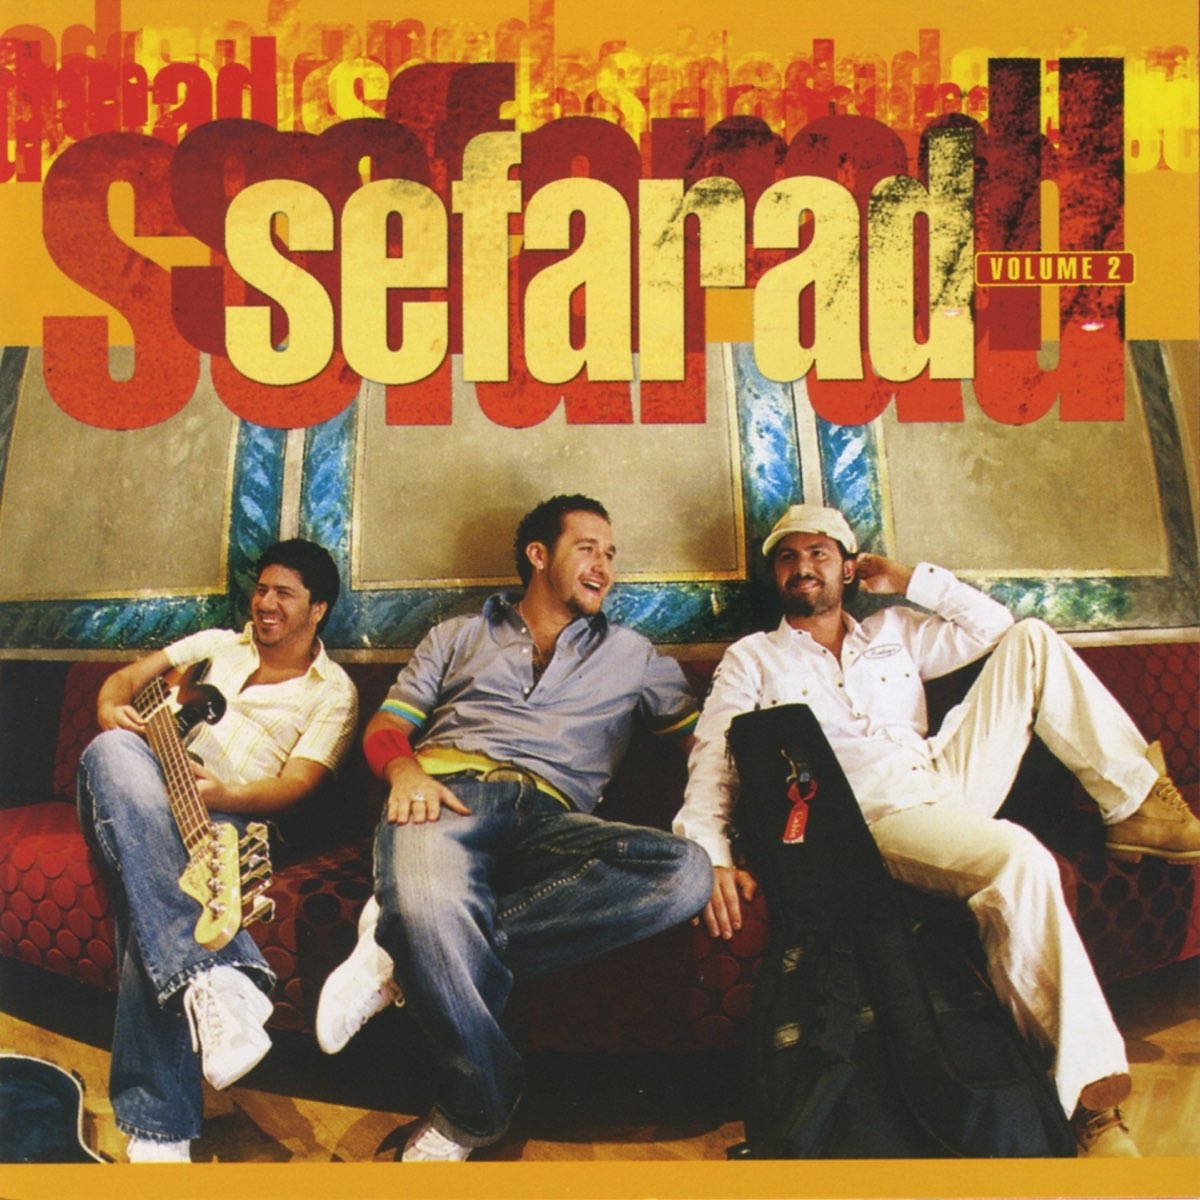 Sefarad, Vol. 2 by Sefarad on Apple Music